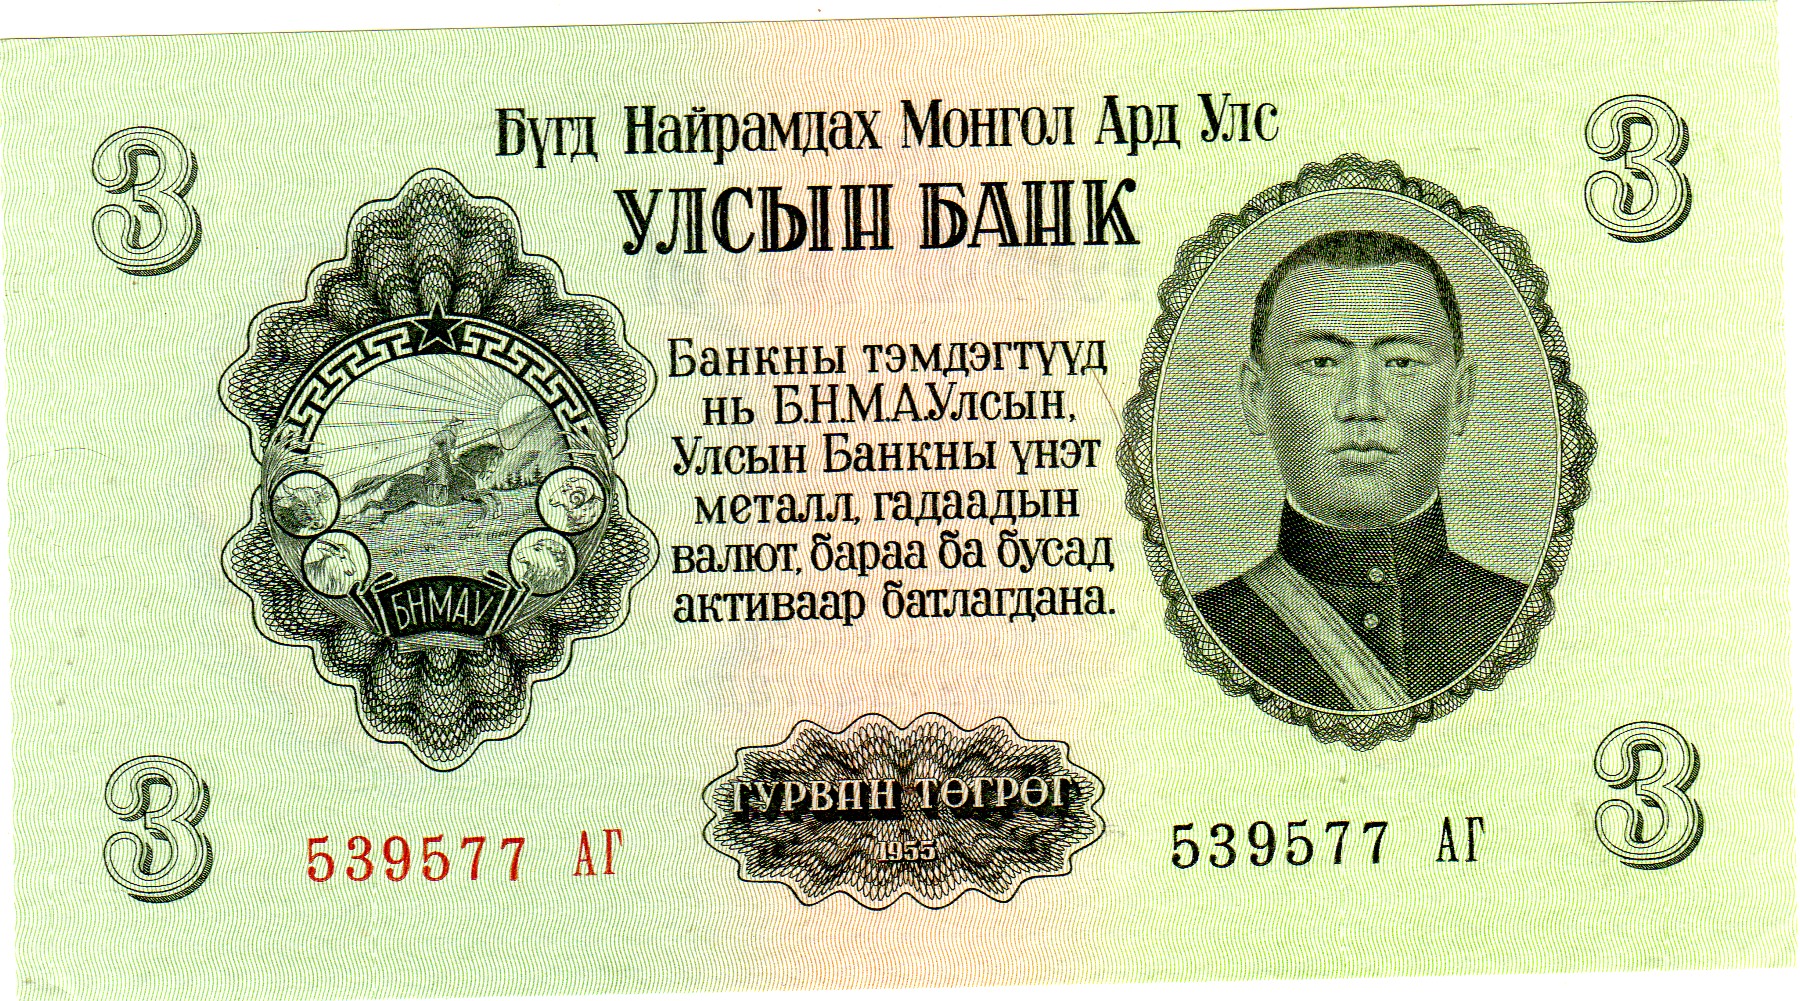 Mongolia kv0